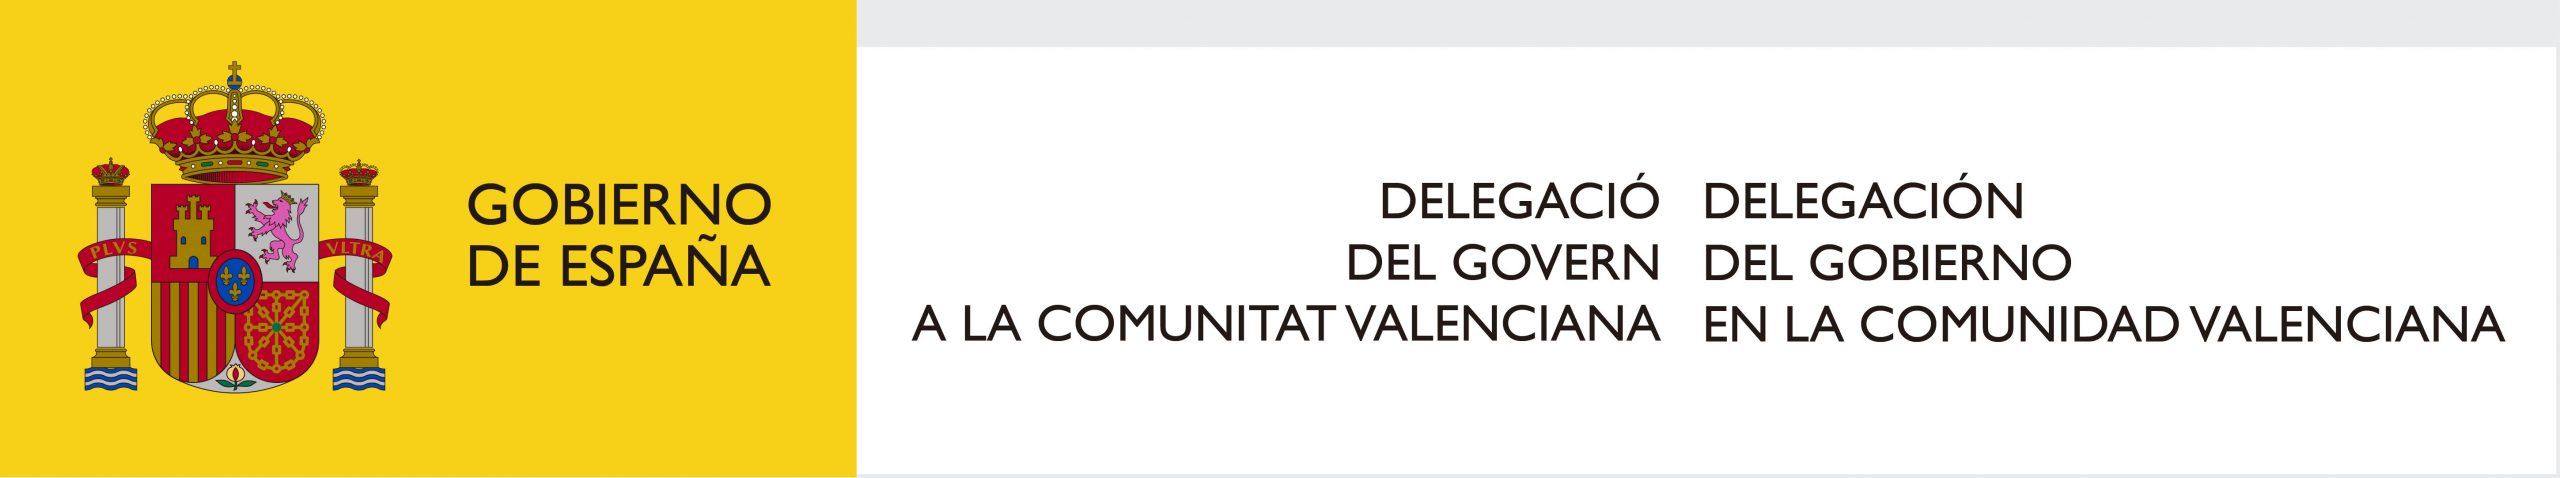 La DGT prevé cerca de 900.000 desplazamientos en las carreteras valencianas con motivo de la operación especial del 1 de mayo